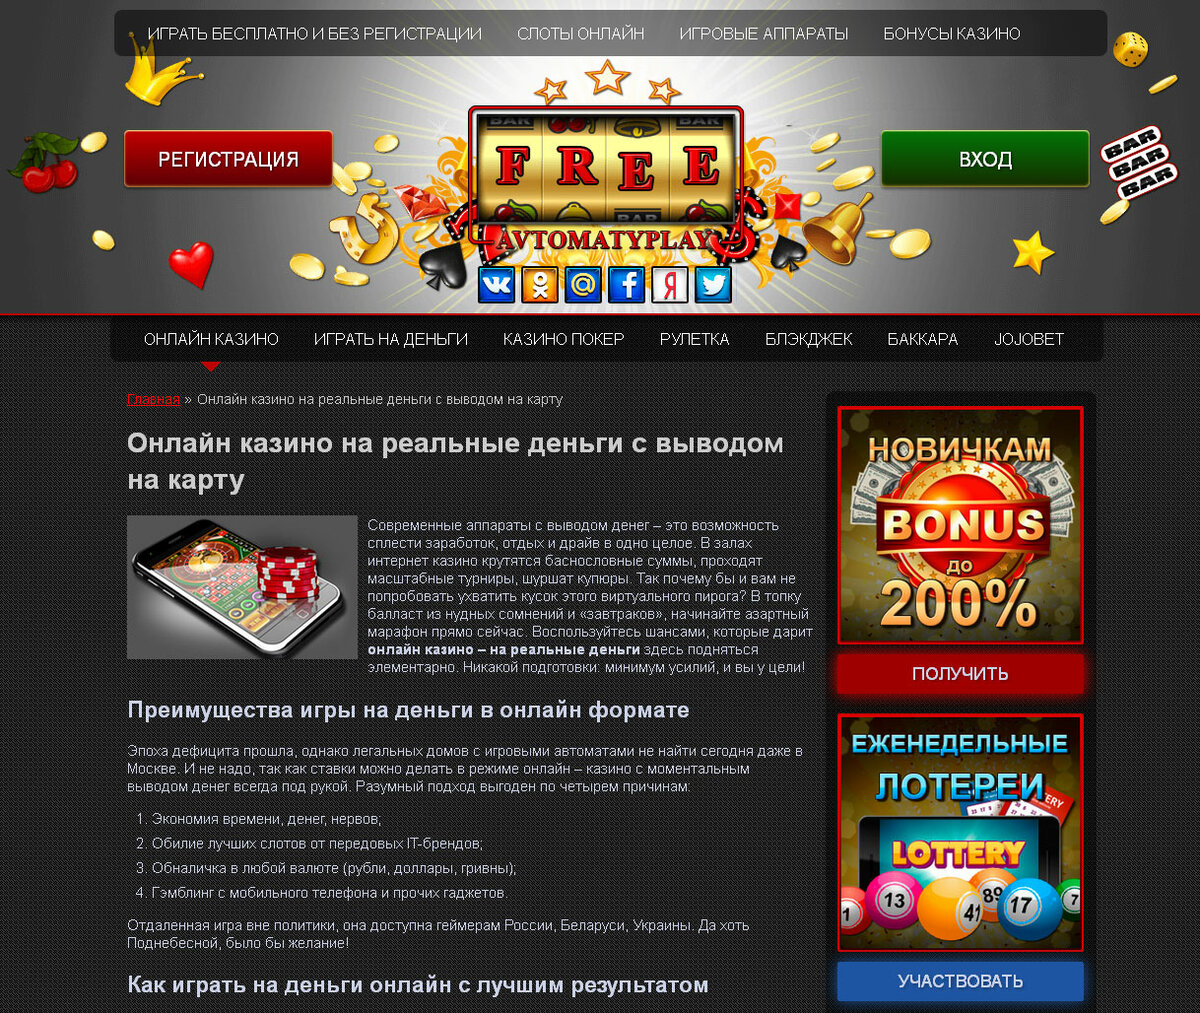 Онлайн казино на деньги с выводом средств ставки на спорт фонбет скачать приложение